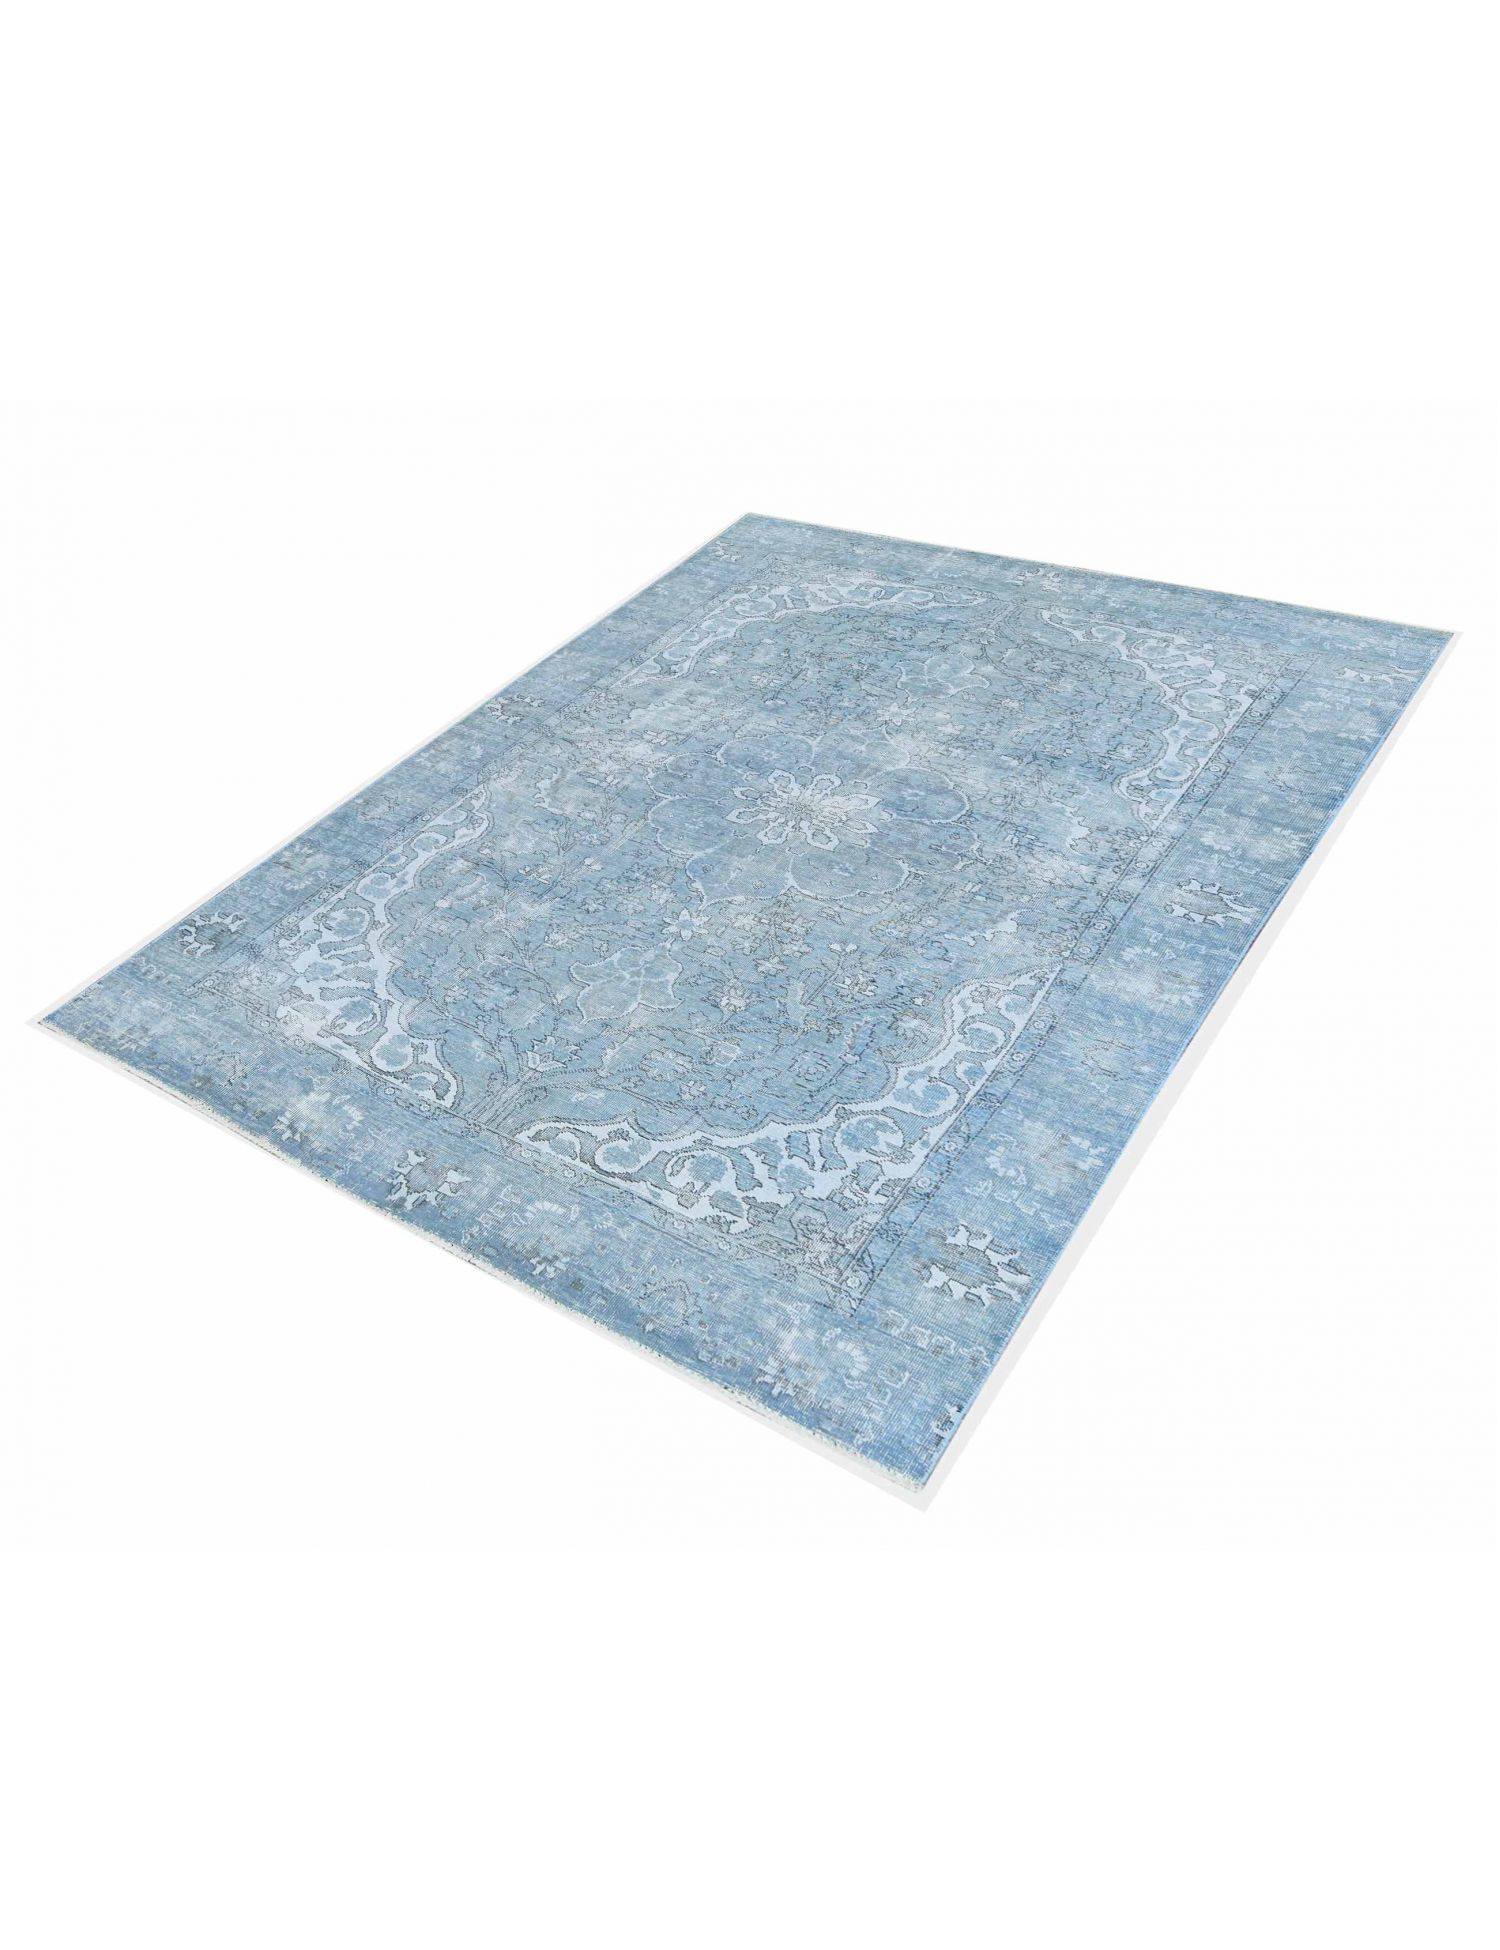 Vintage Teppich  blau <br/>279 x 183 cm